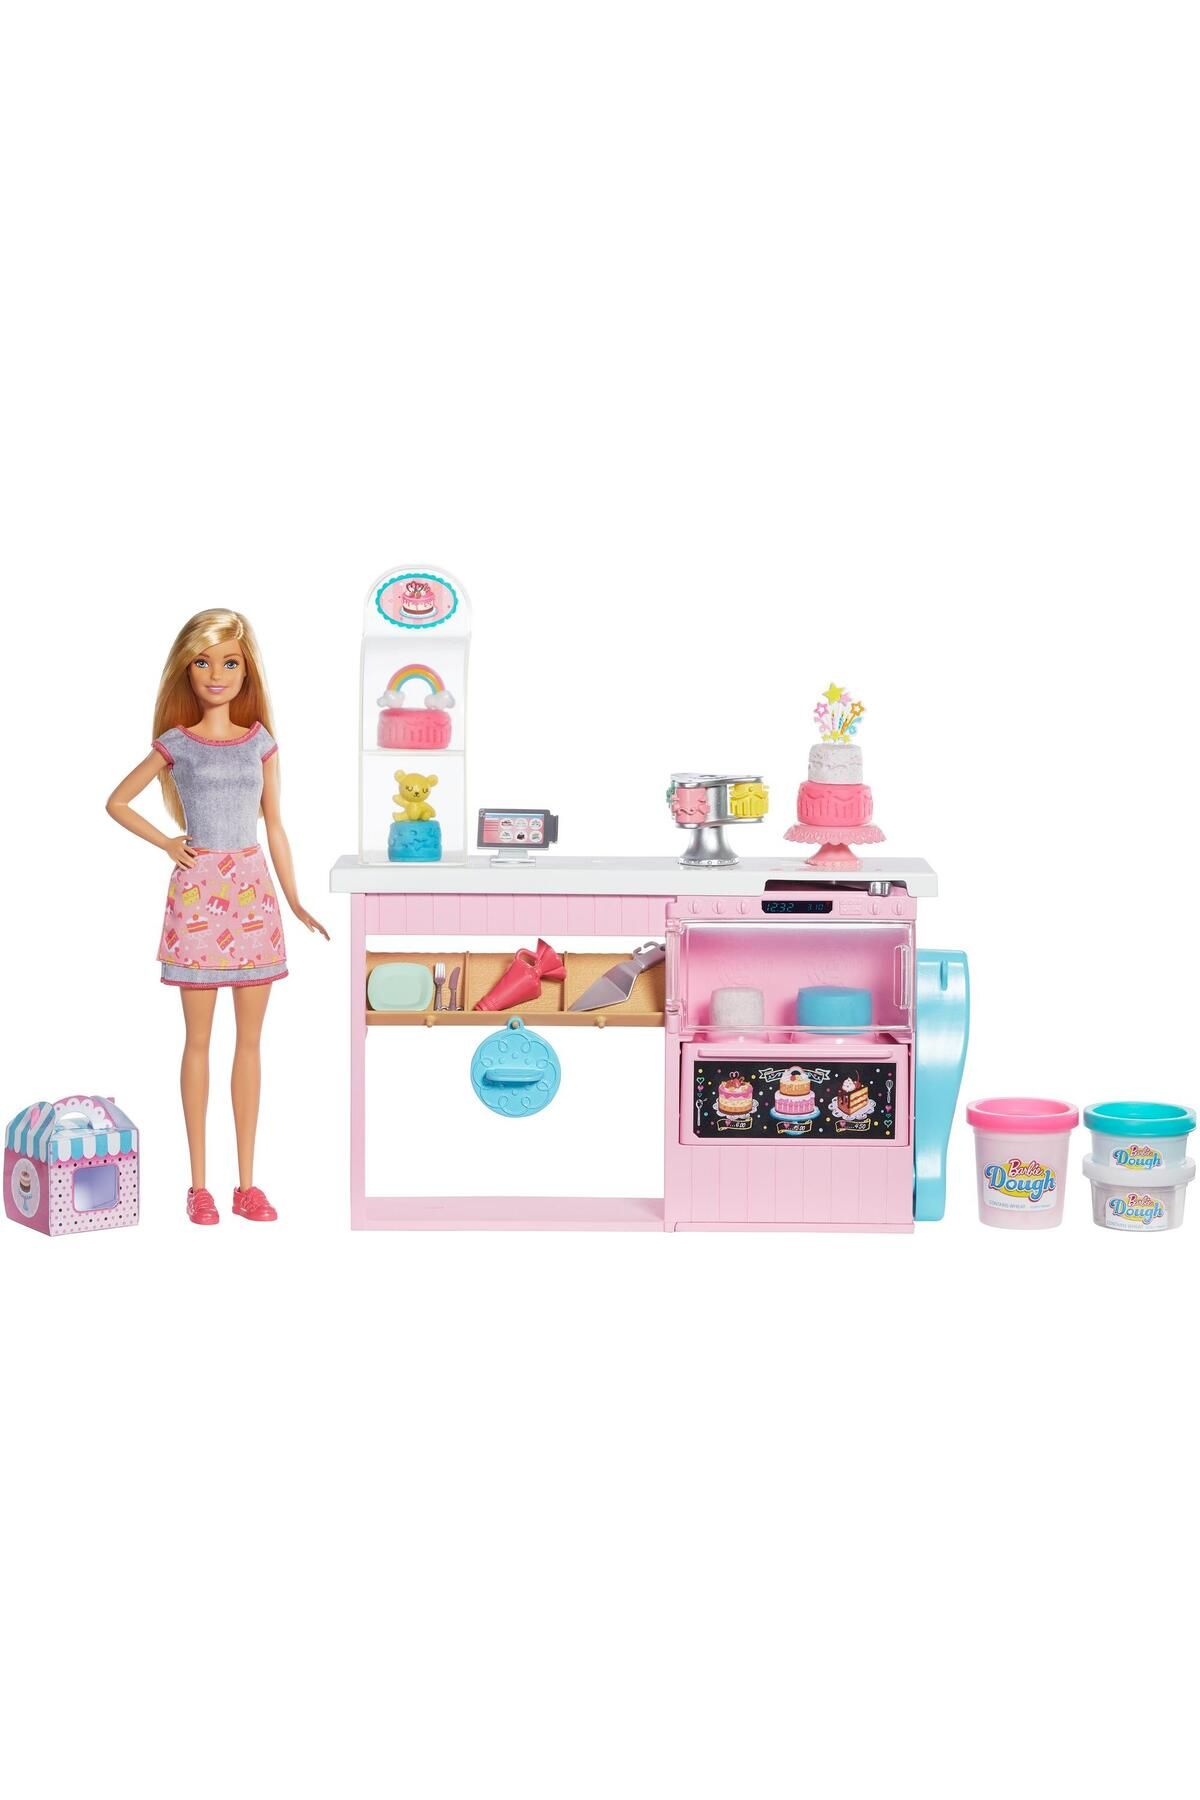 Barbie 'nin Pasta Dükkanı Oyun Seti, Sarışın Bebek, Mutfak Tezgahı, Oyun Hamuru Ve Oyuncak Pasta Süsl